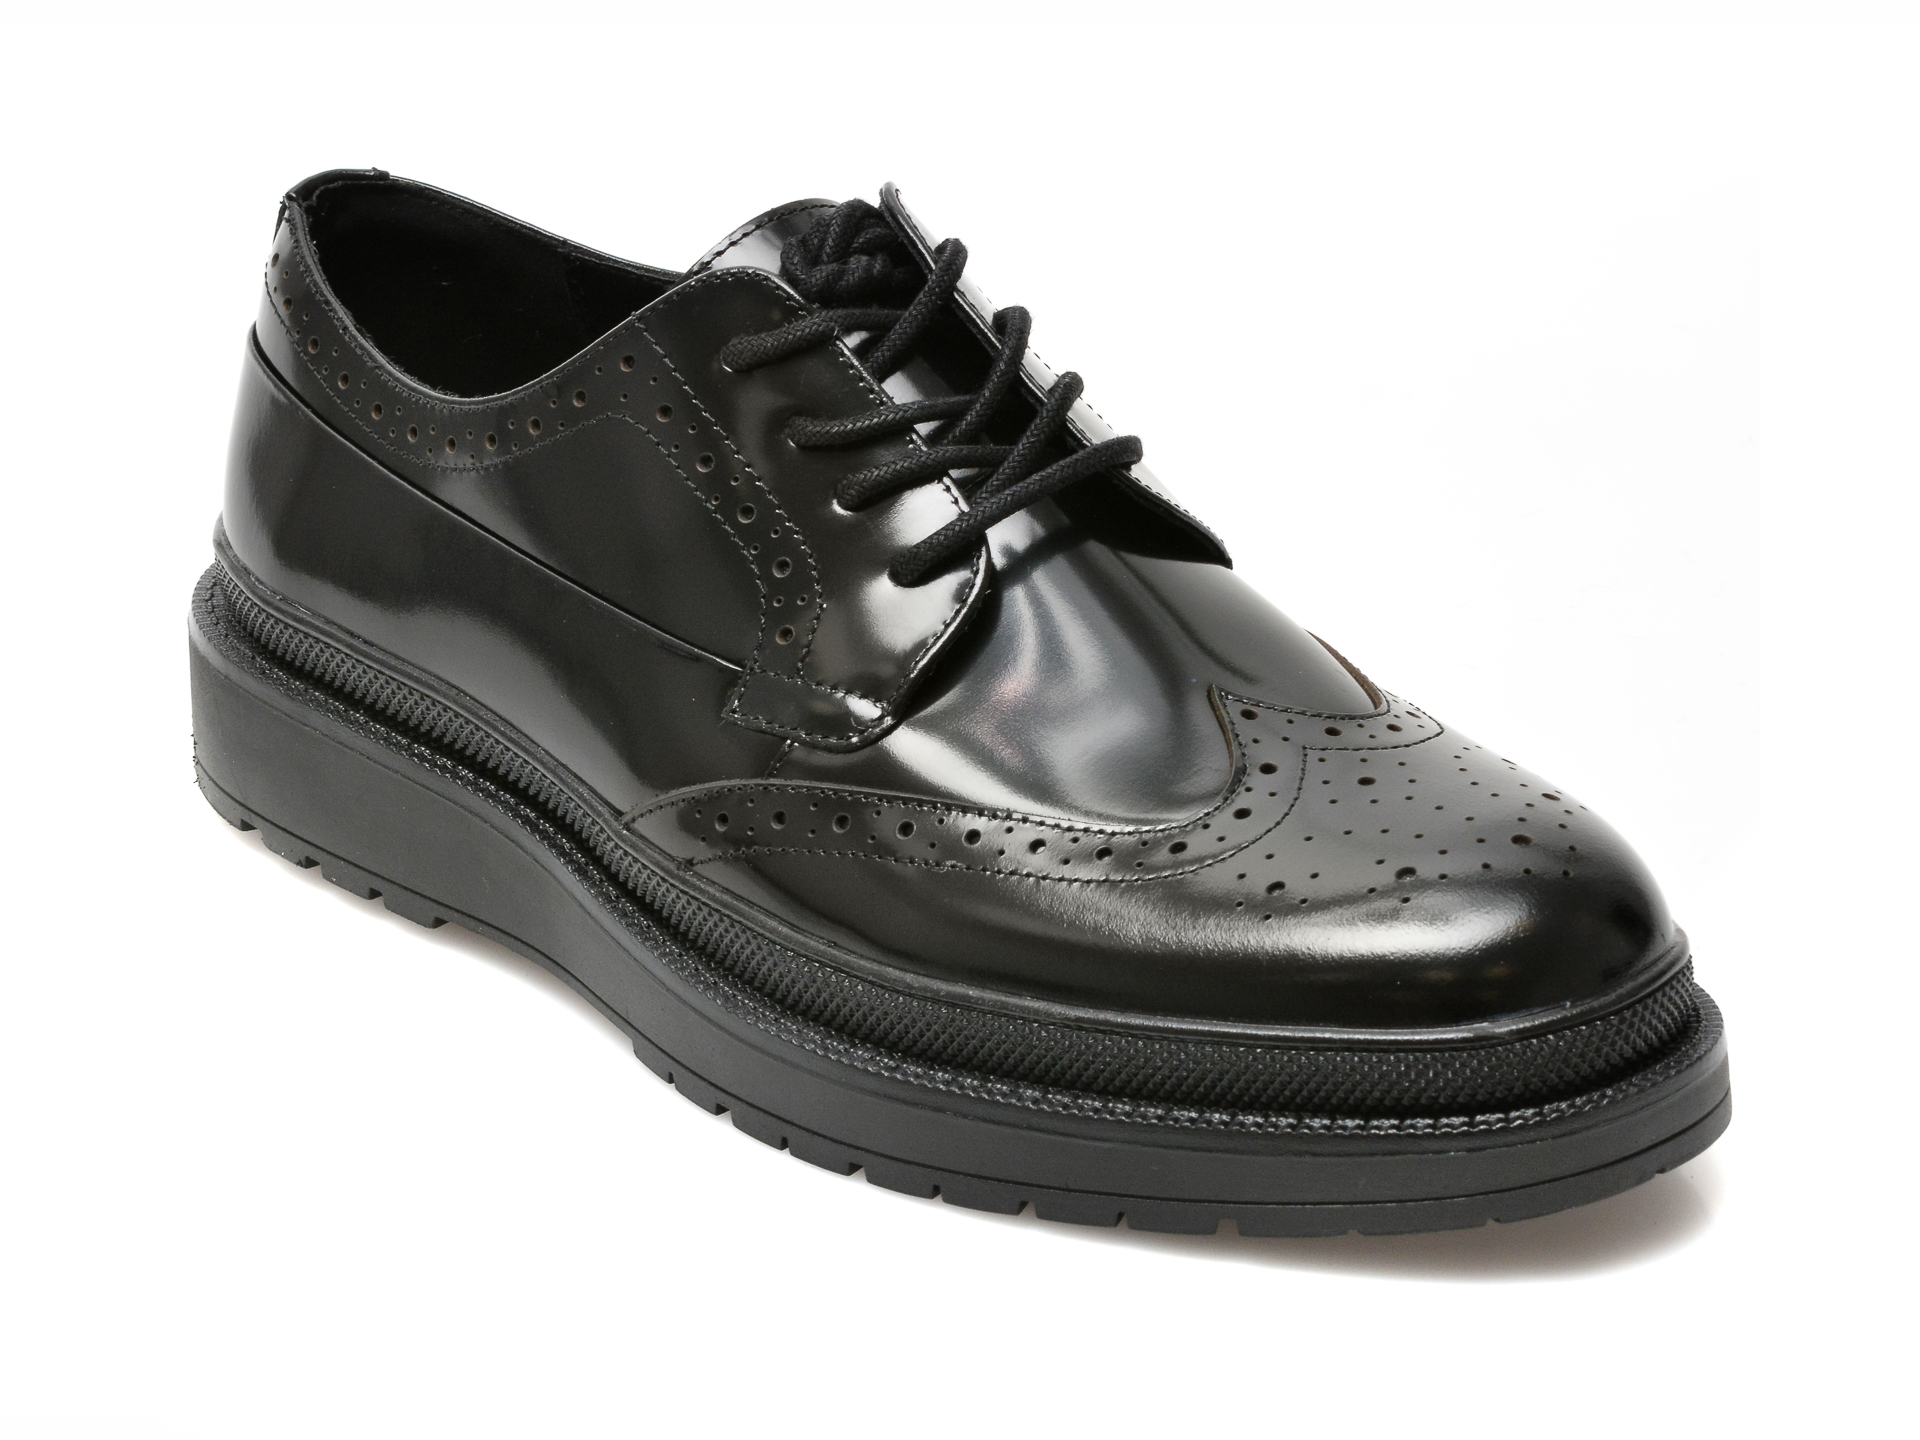 Pantofi ALDO negri, BEZOS001, din piele naturala lacuita Aldo Aldo